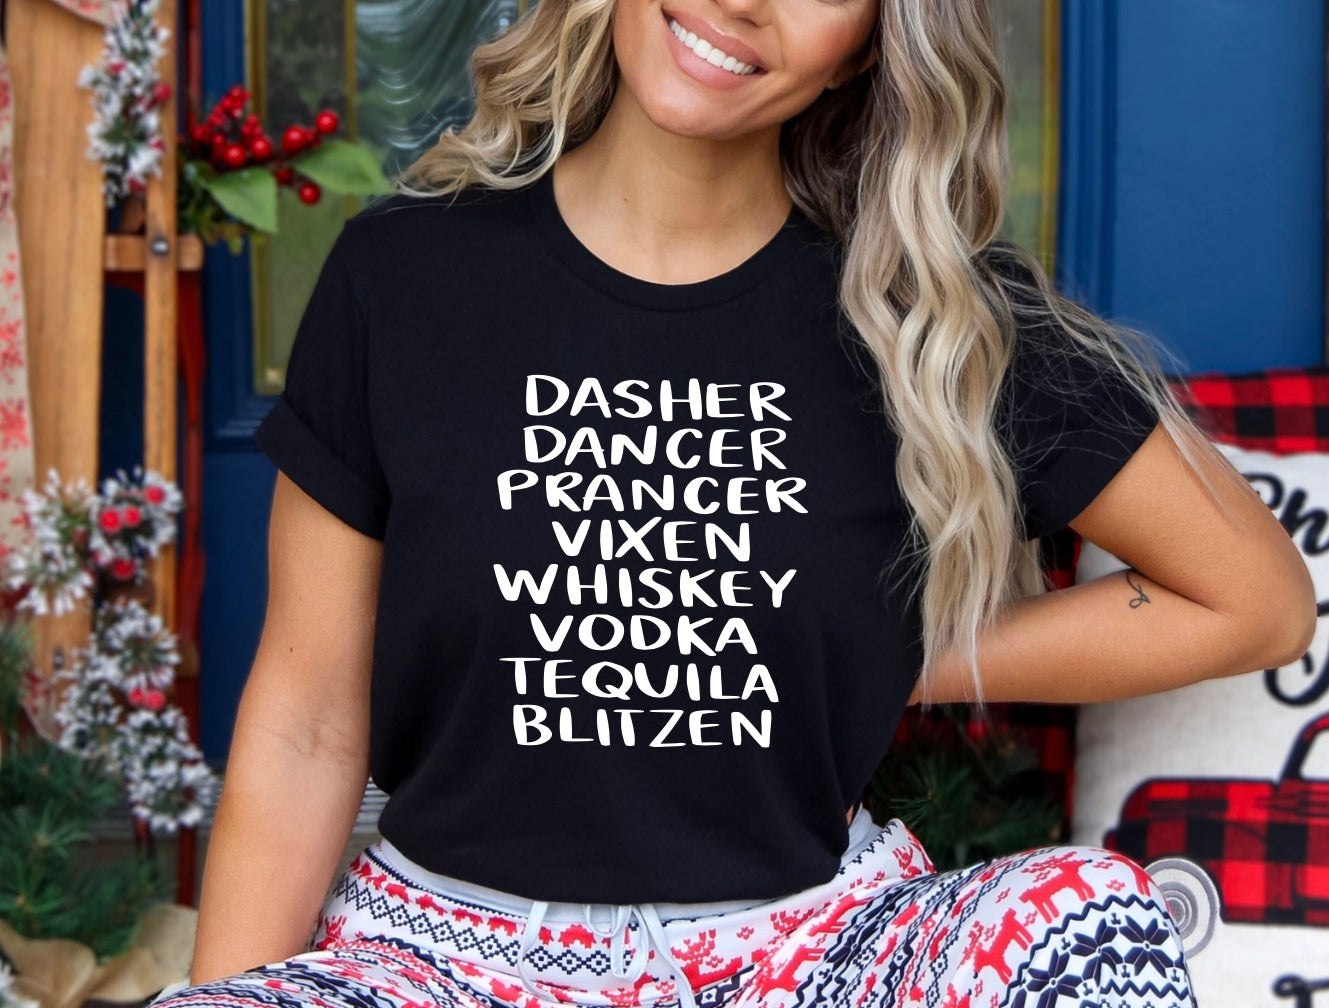 Dasher dancer prancer vixen whiskey vodka tequila blitzen t-shirt In black